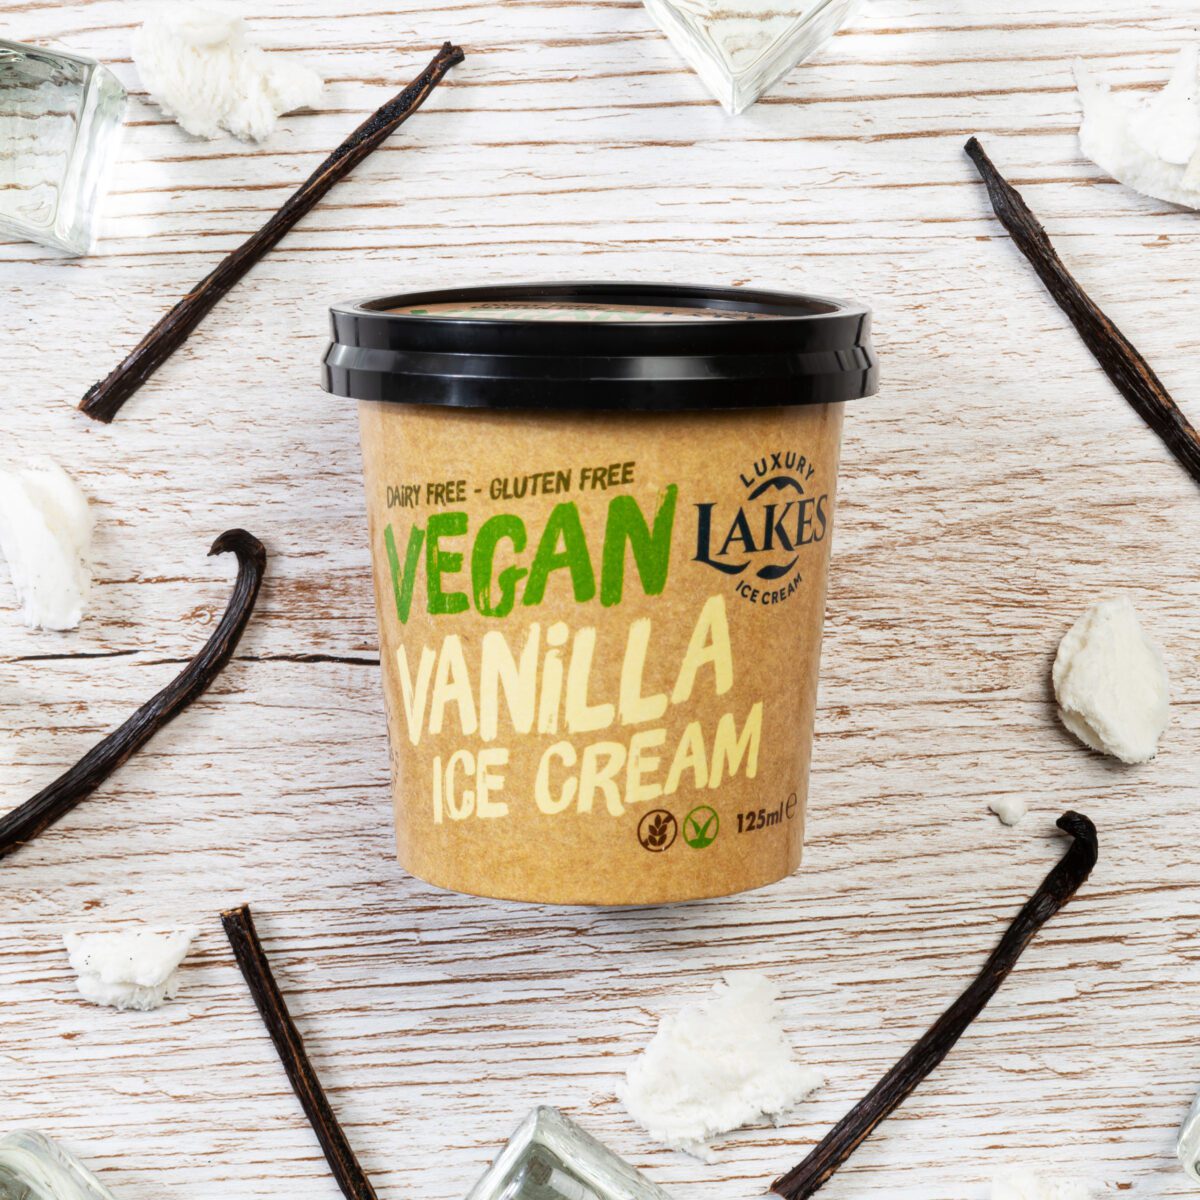 Vegan Vanilla Ice Cream tub